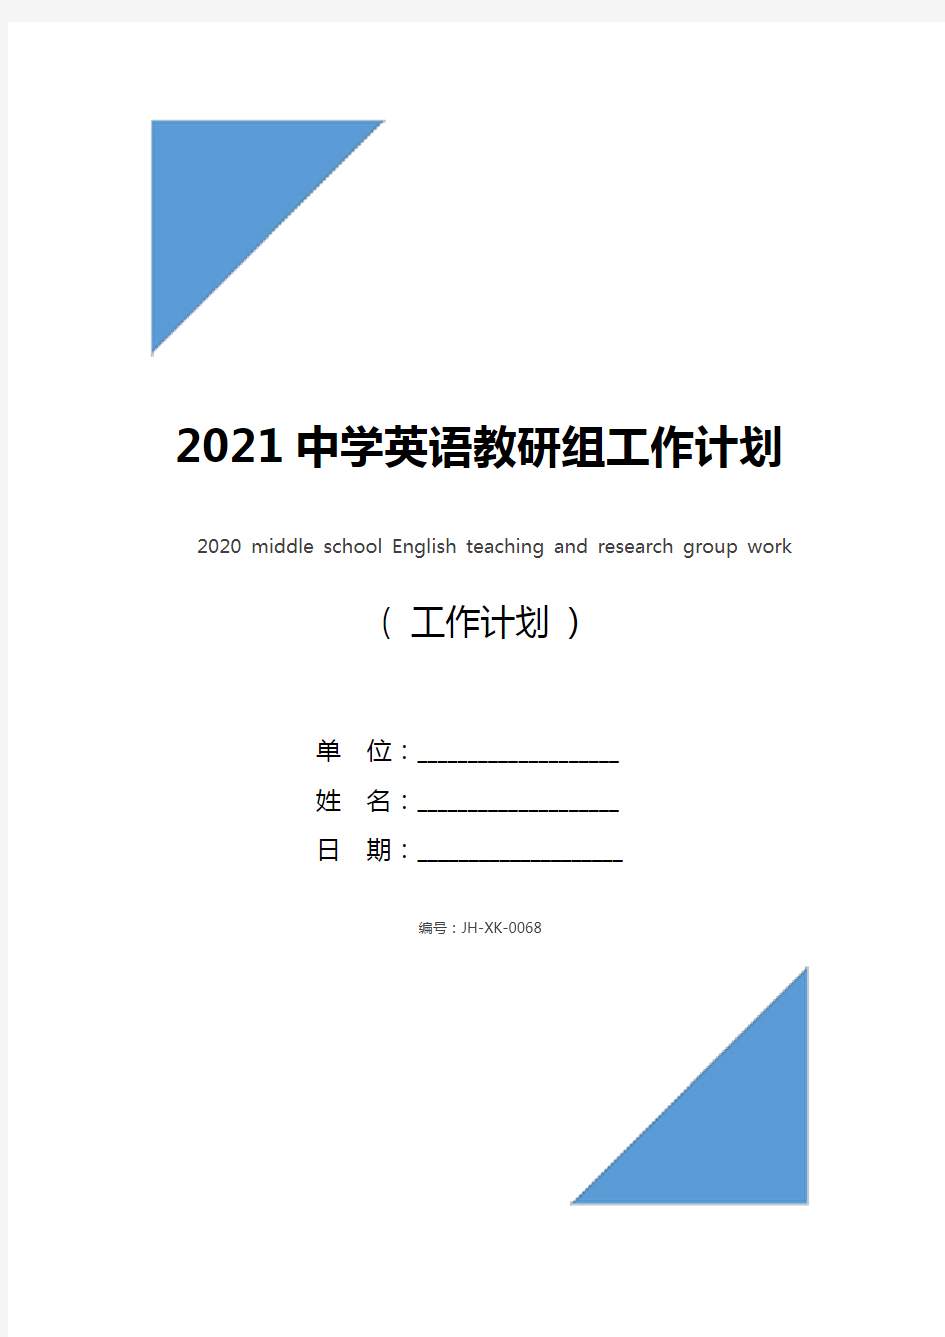 2021中学英语教研组工作计划表(通用版)